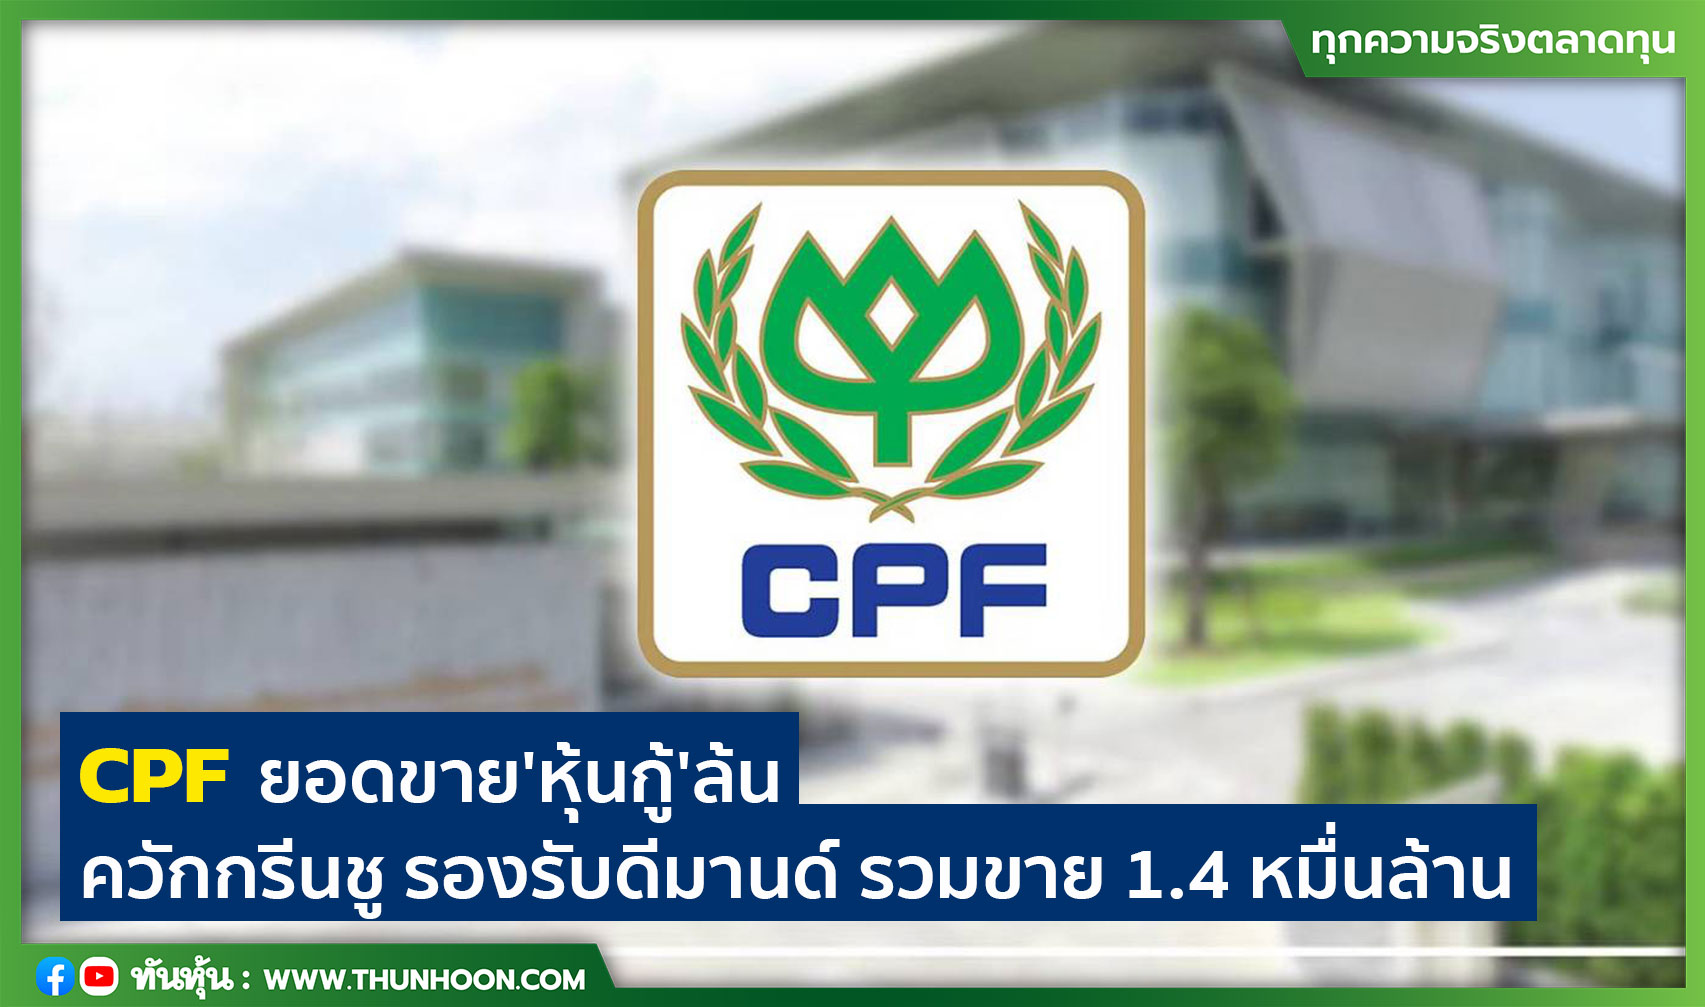 CPF ยอดขายหุ้นกู้'ล้น' ควักกรีนชู รองรับดีมานด์ รวมขาย 1.4 หมื่นล้าน